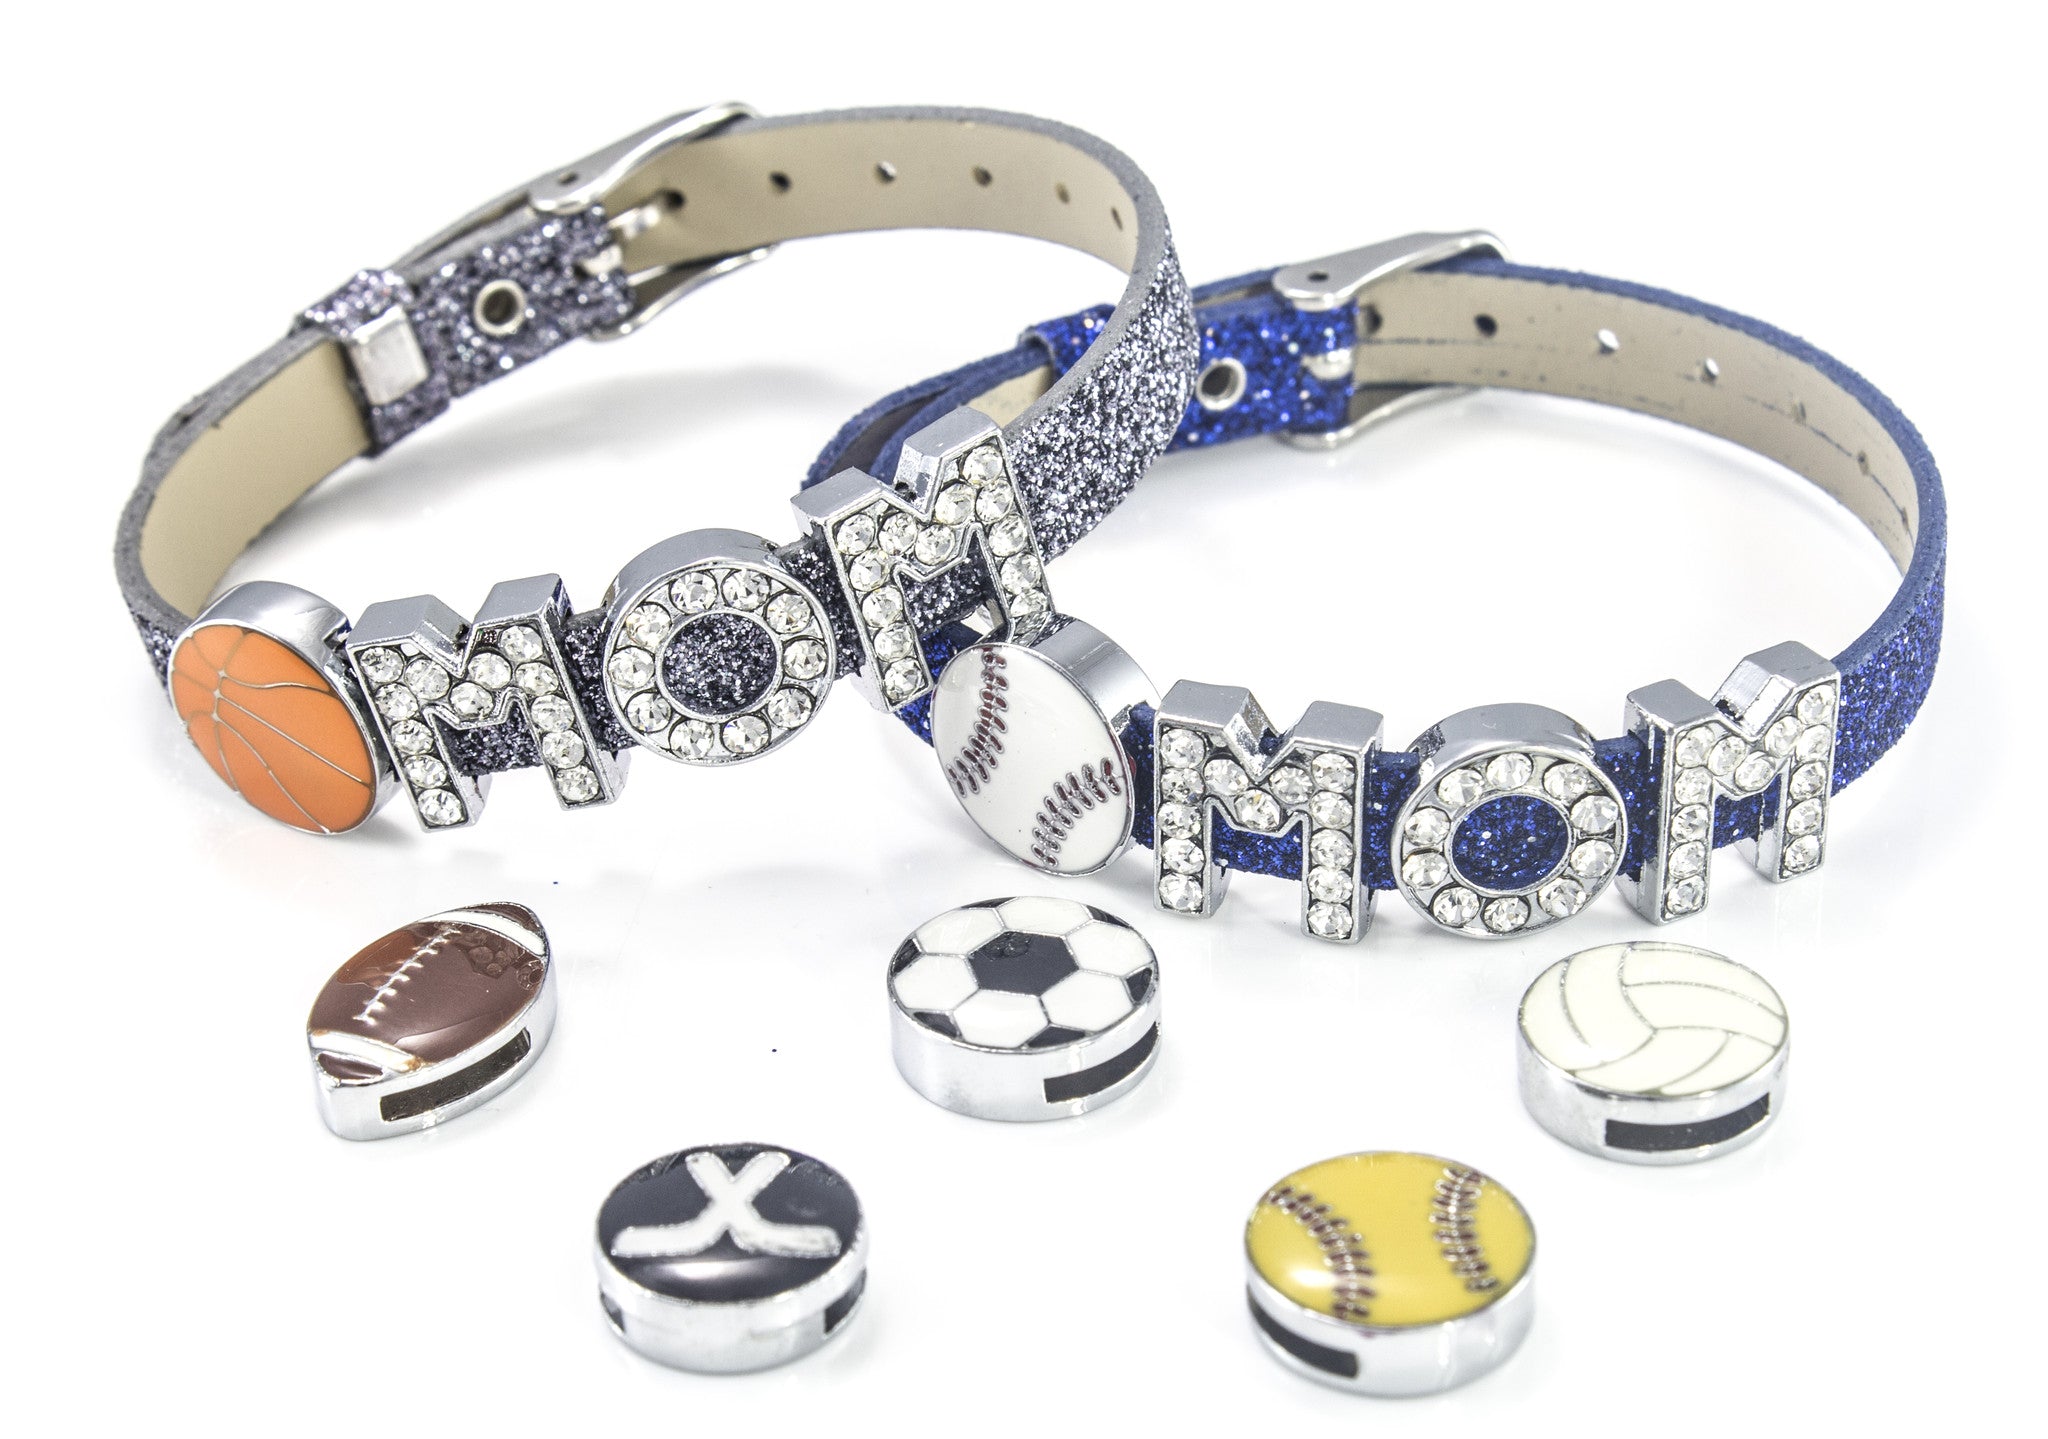 Mothers Day "Sports" Sliding Charms Bracelet